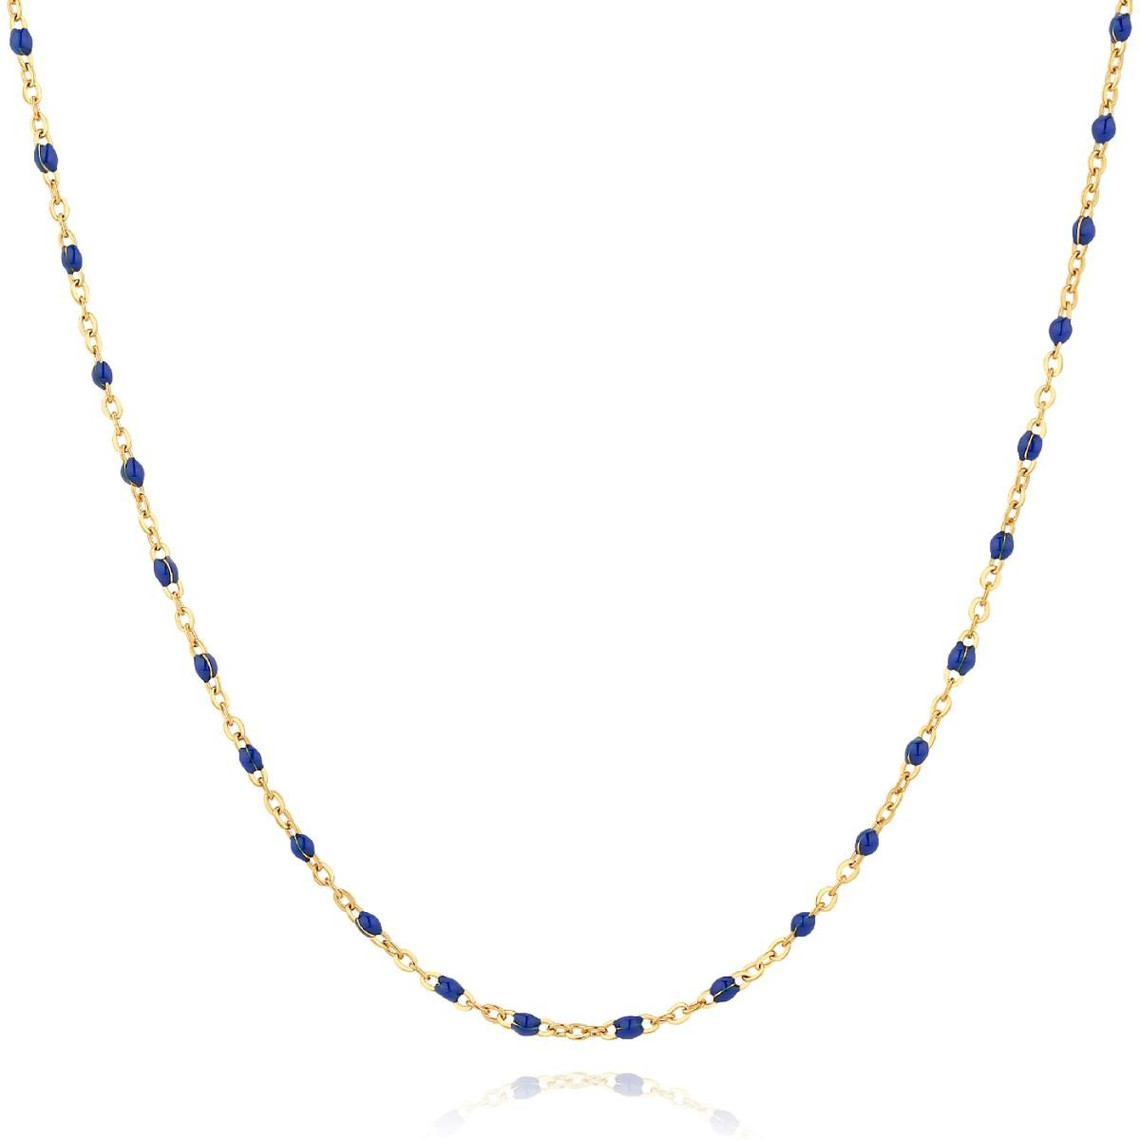 collier femme pixies bijoux - pns0030-1dbl acier bleu foncé